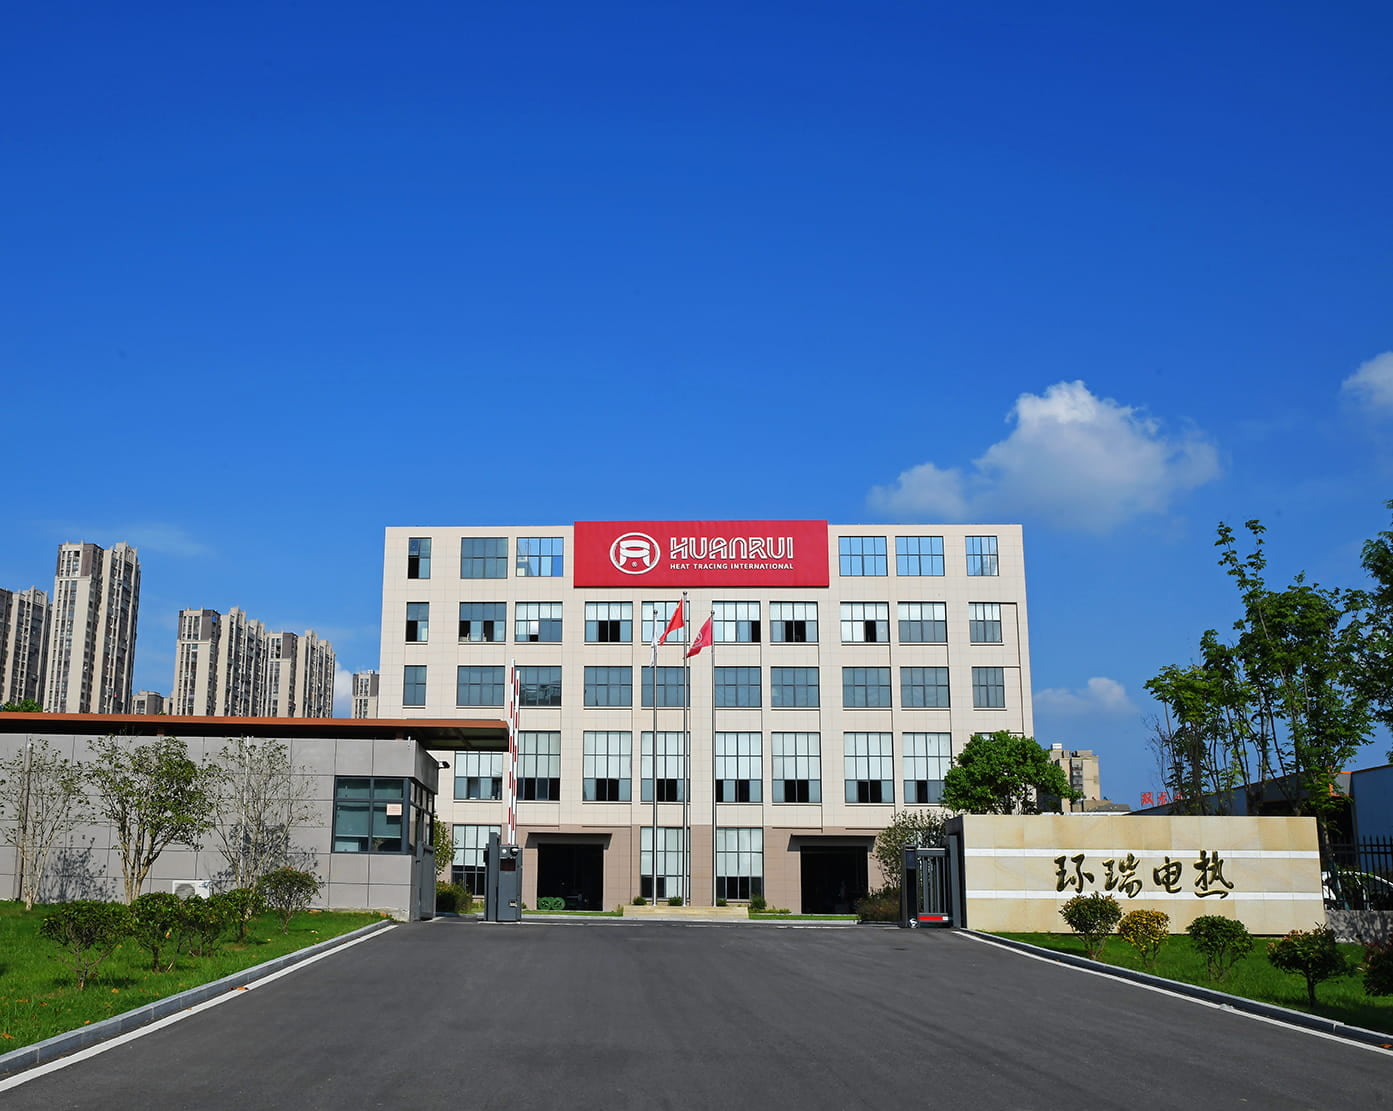 Celebrare calorosamente l'offerta di successo di Anhui Huanrui per il progetto di approvvigionamento di accessori e cinture di riscaldamento elettrico CNPC
